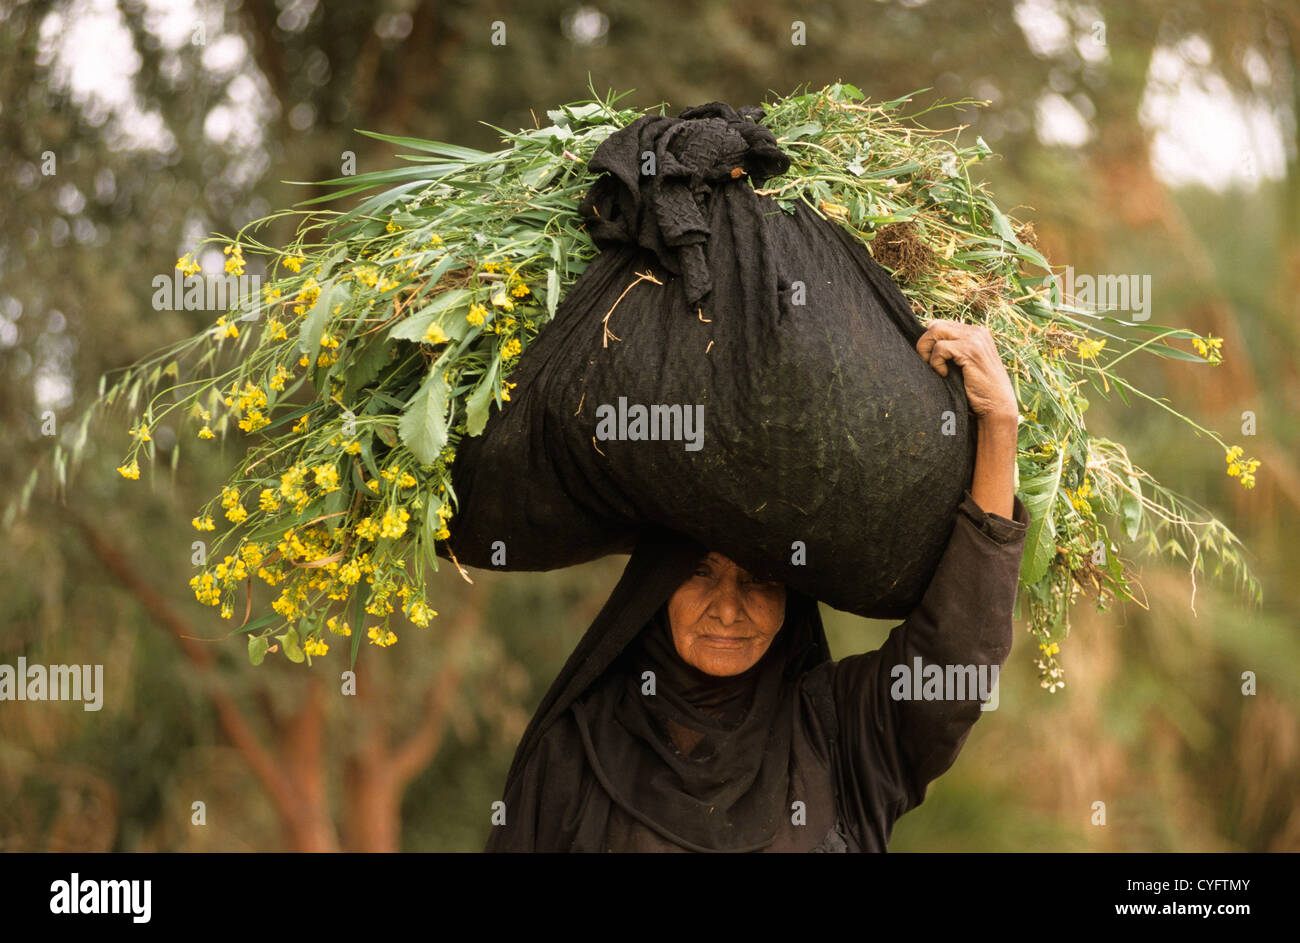 Egypte, Louxor, Nil, Cisjordanie, femme transportant du fourrage pour le bétail Banque D'Images